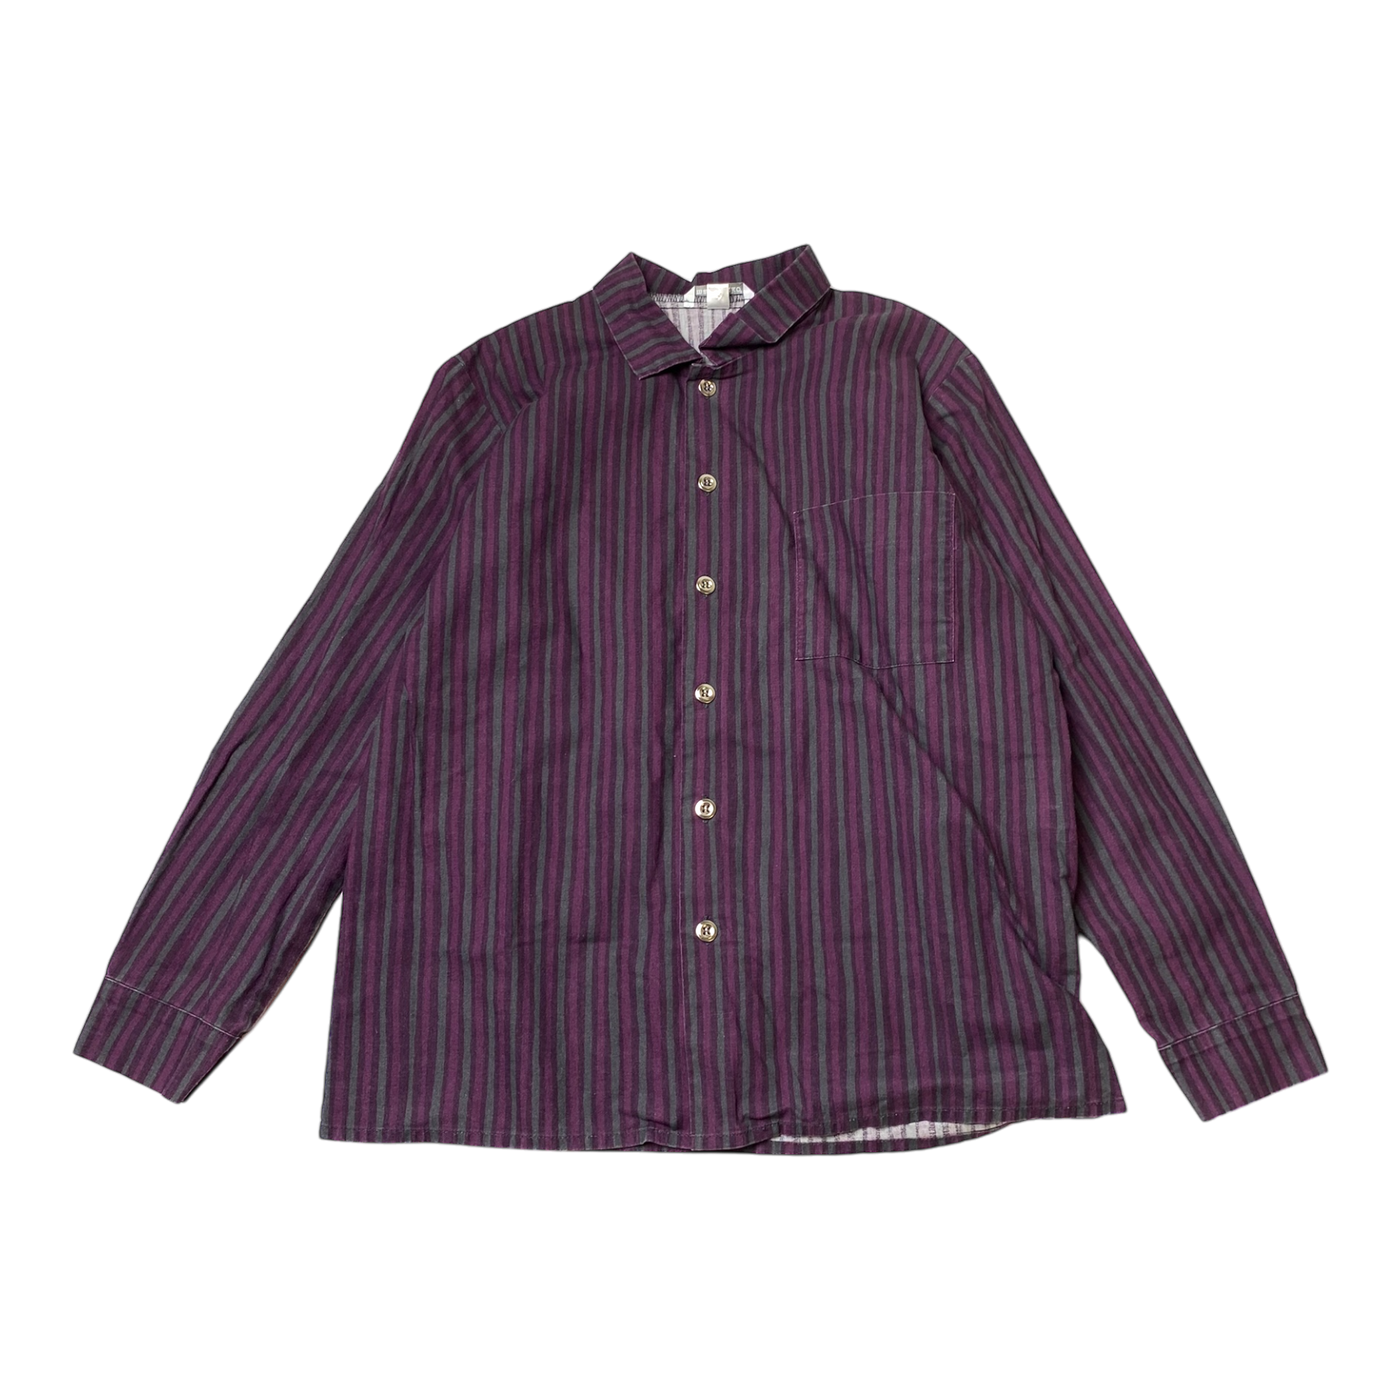 Marimekko jokapoika shirt, purple | 140cm